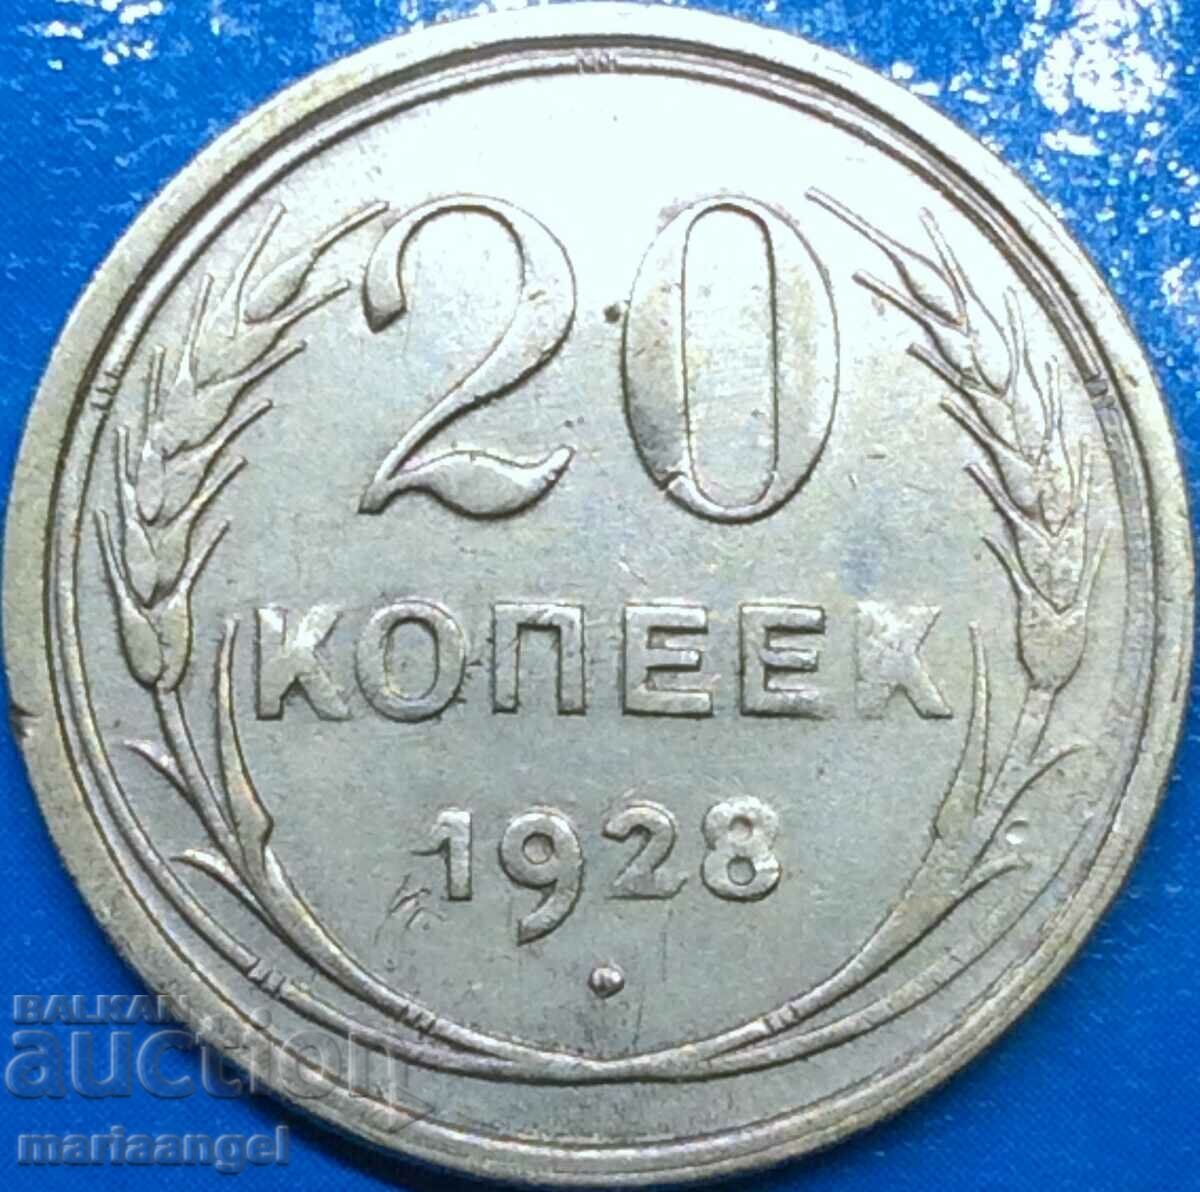 20 kopecks 1928 Russia USSR silver